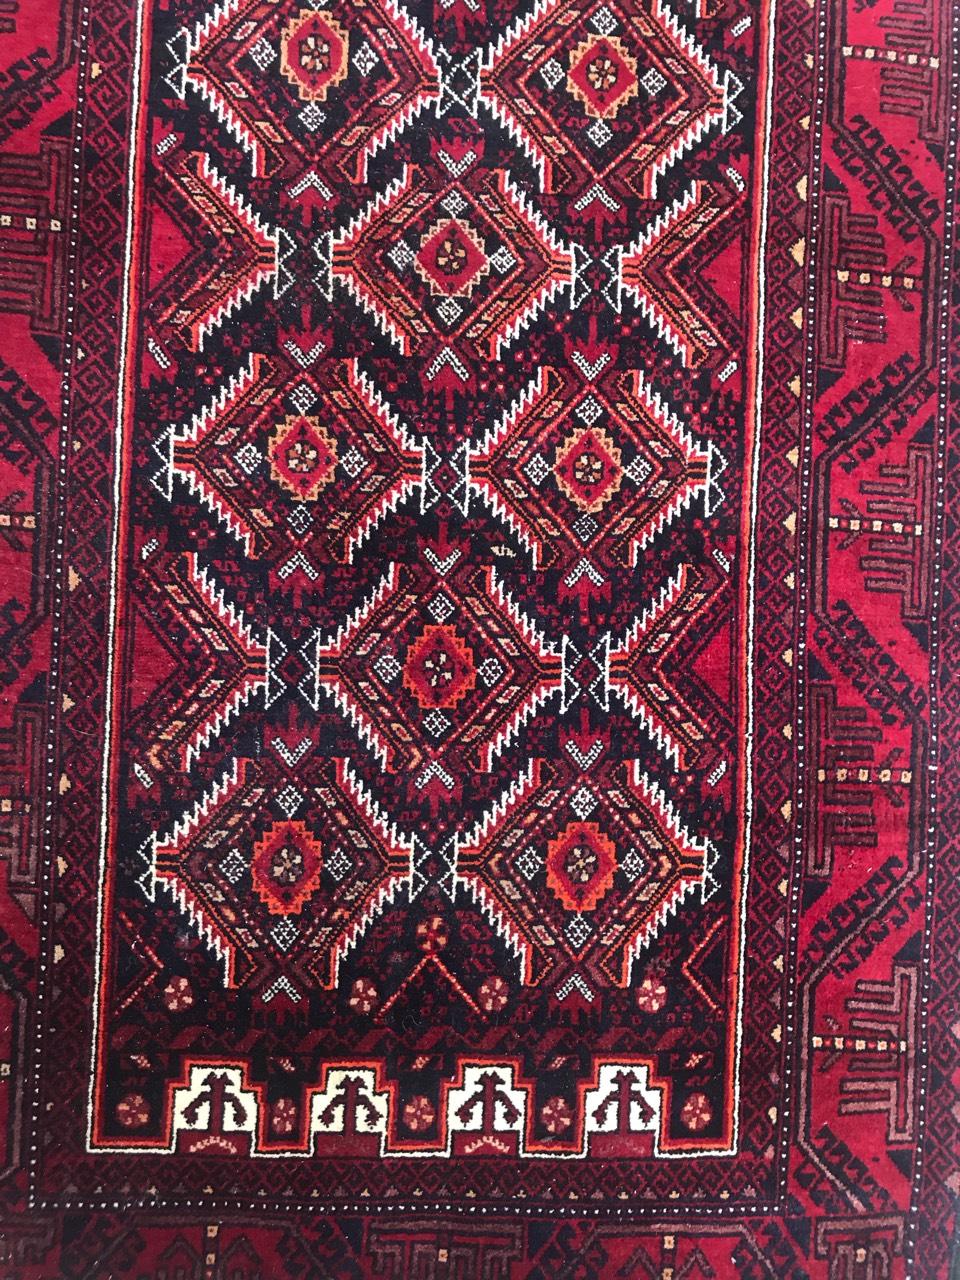 Turkmenischer Belutschen-Stammesteppich aus Afghanistan, 20. Jahrhundert, mit schönem geometrischem Muster und roten und schwarzen Farben, vollständig handgeknüpft mit Wollsamt auf Wollfond.

✨✨✨
